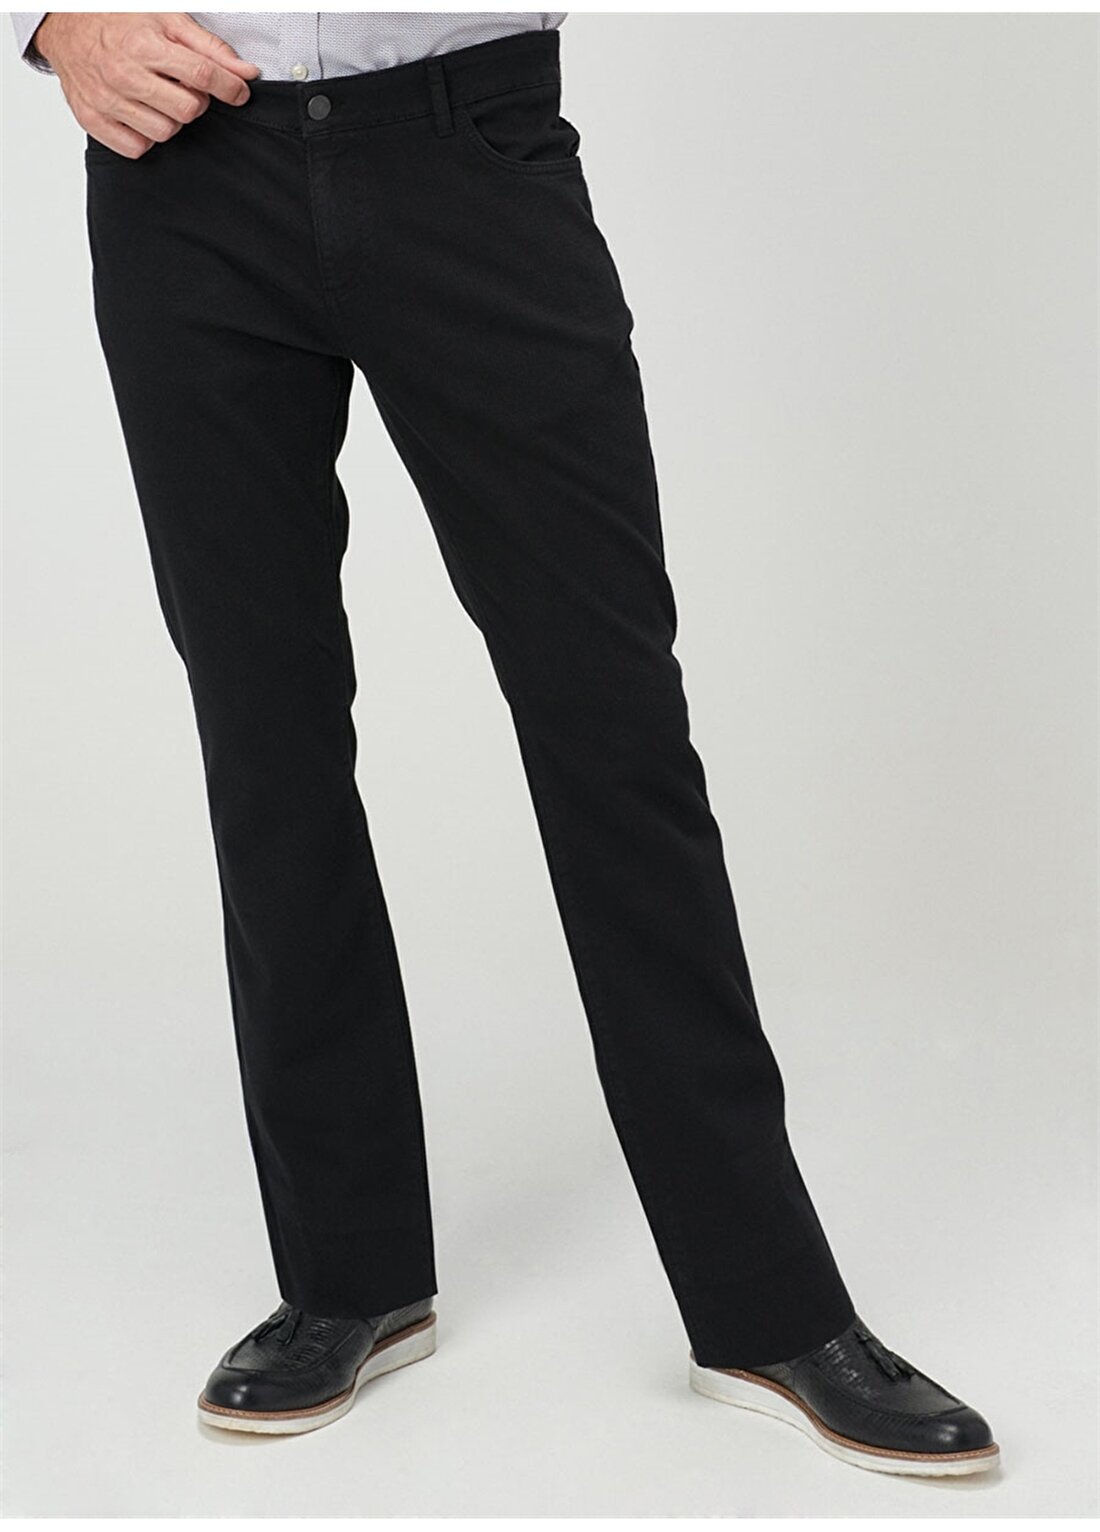 Altınyıldız Classic Siyah Pantolon